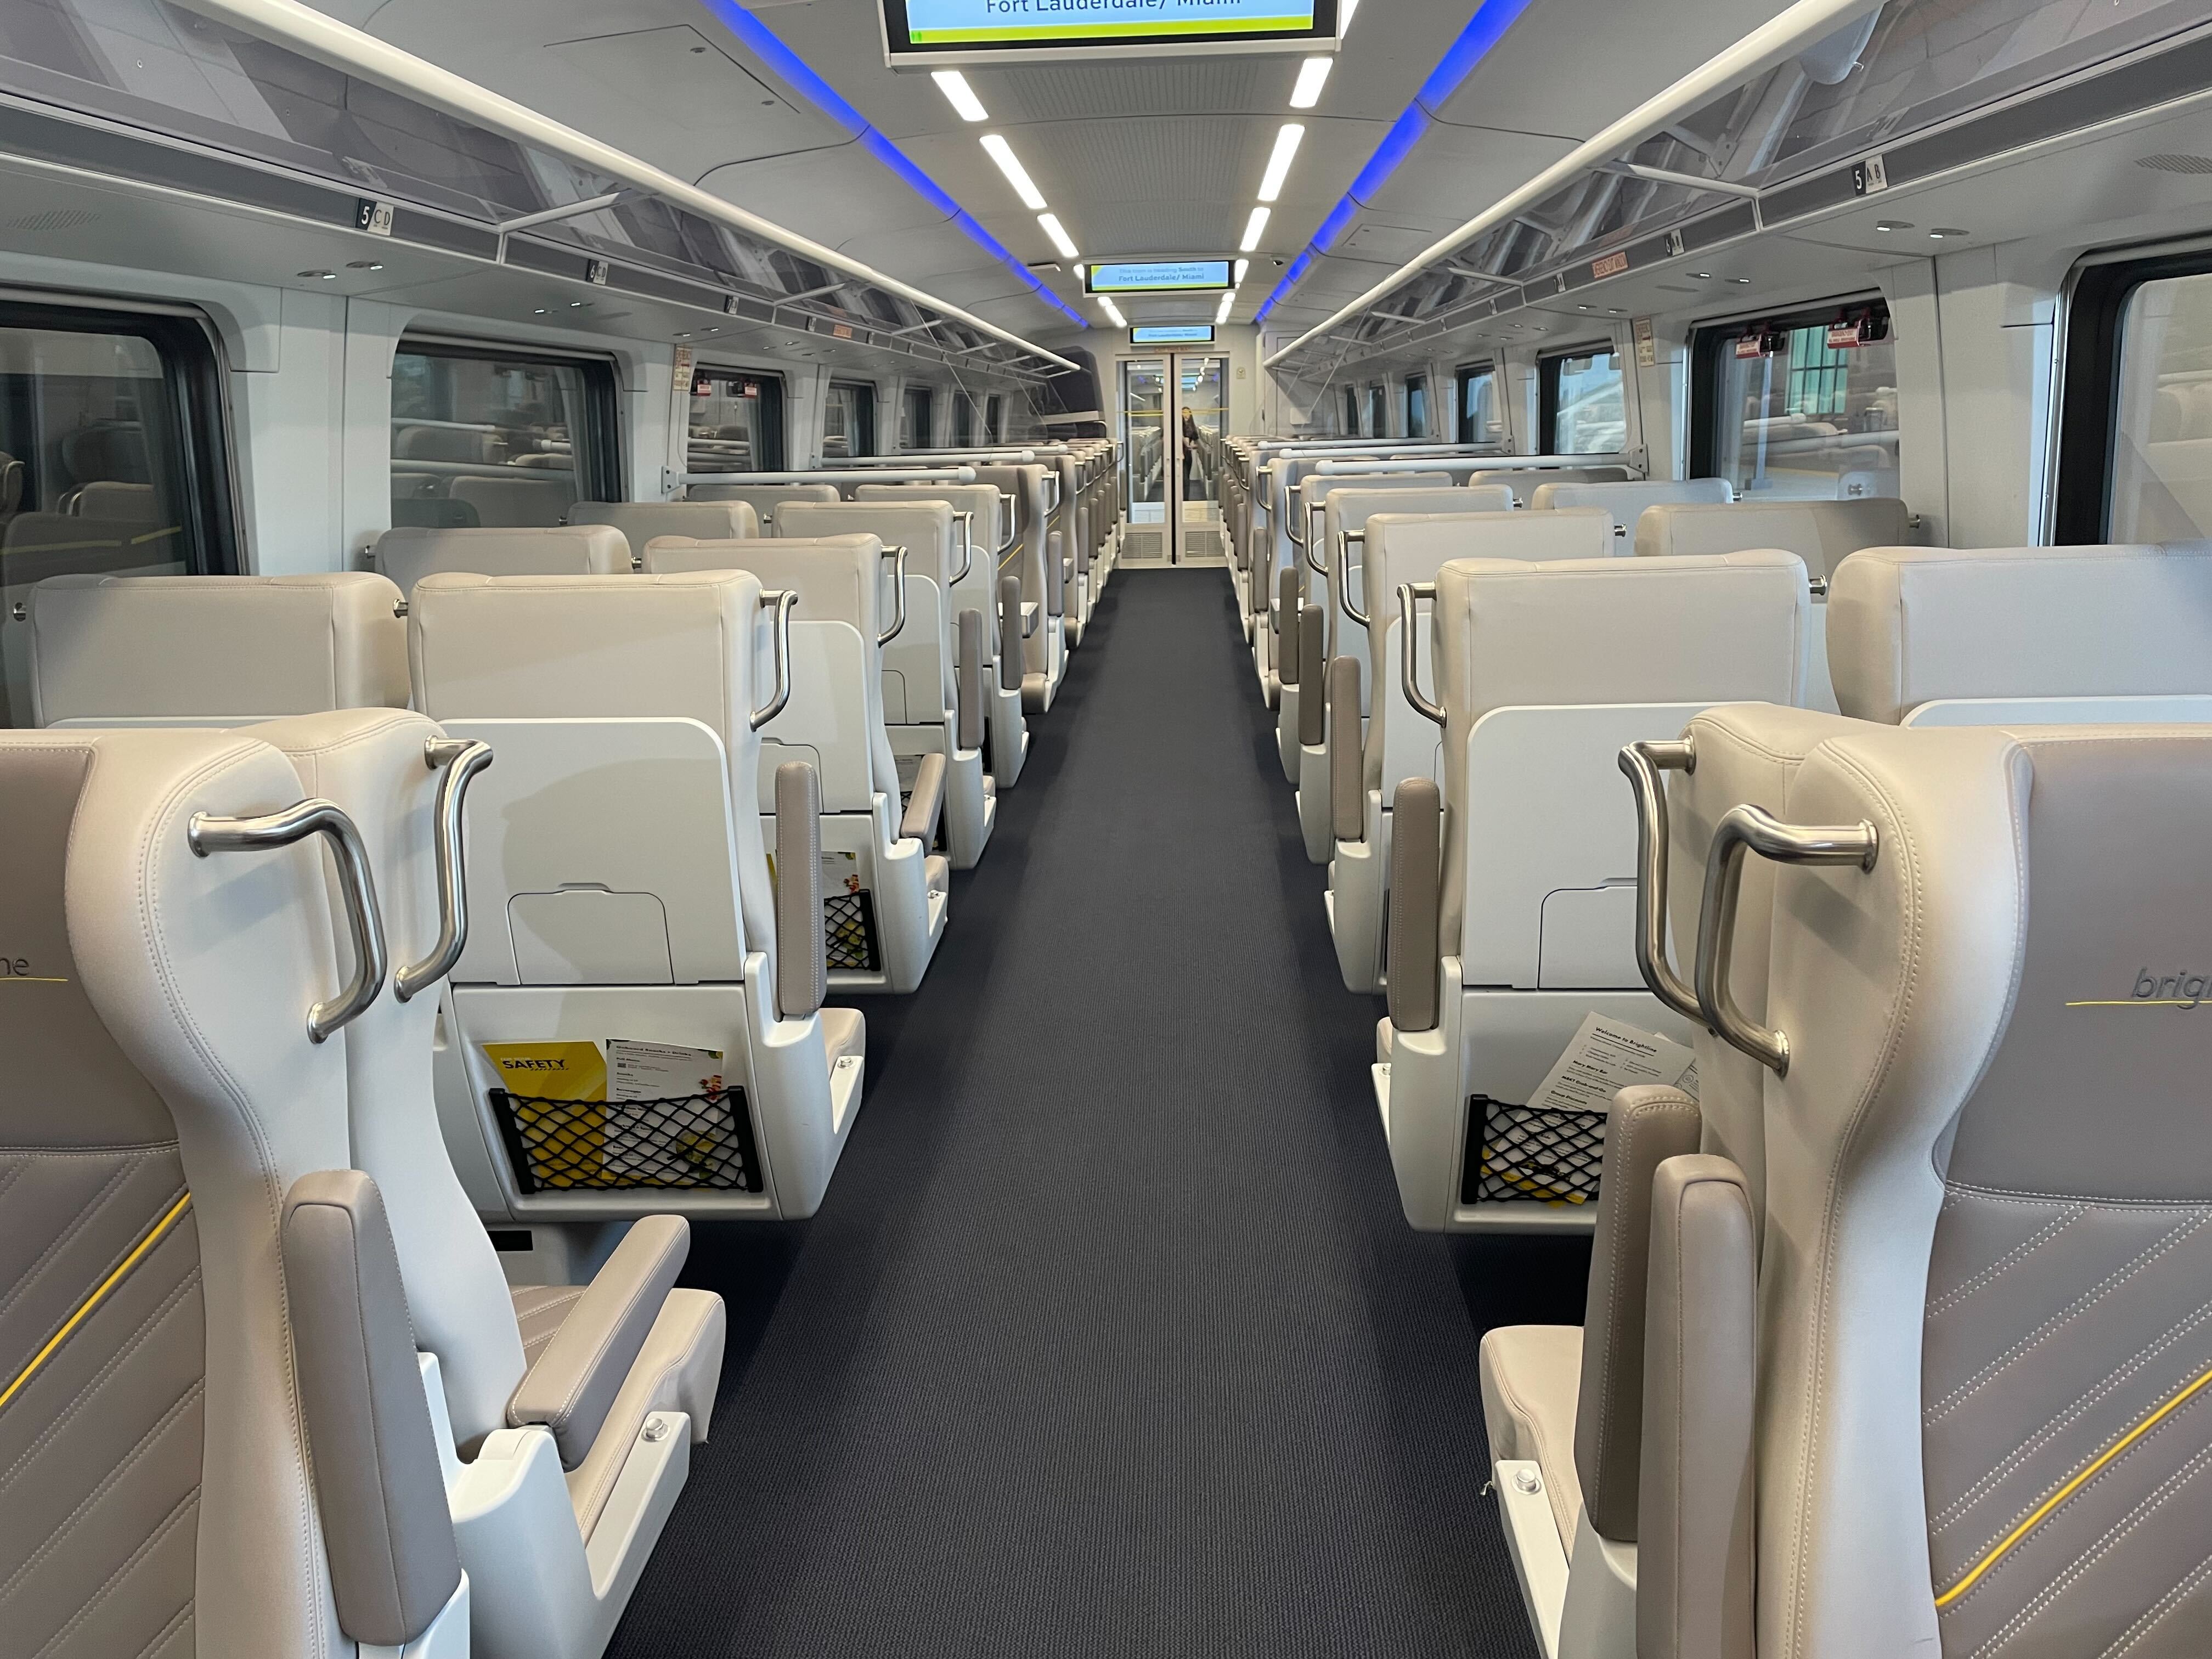 Un moderno tren Brightline surca las vías, acercando a Miami y Orlando en un cómodo y rápido viaje que transforma la experiencia de viajar por Florida